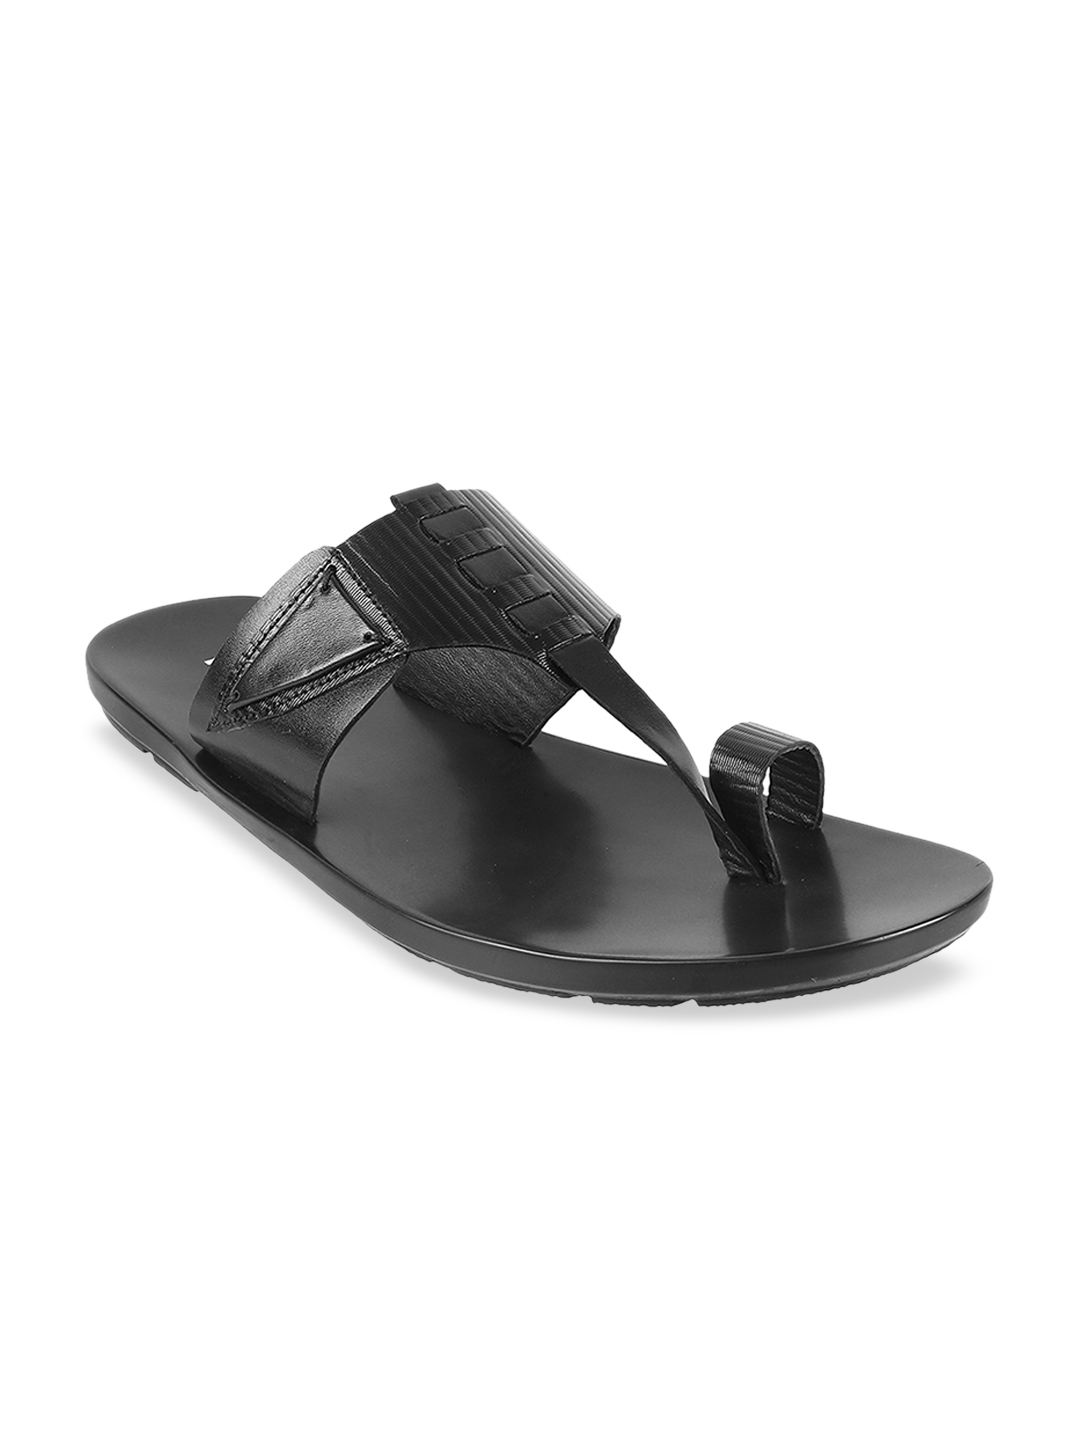 Buy Mochi Men Black Leather Comfort Sandals - Sandals for Men 11784176 ...